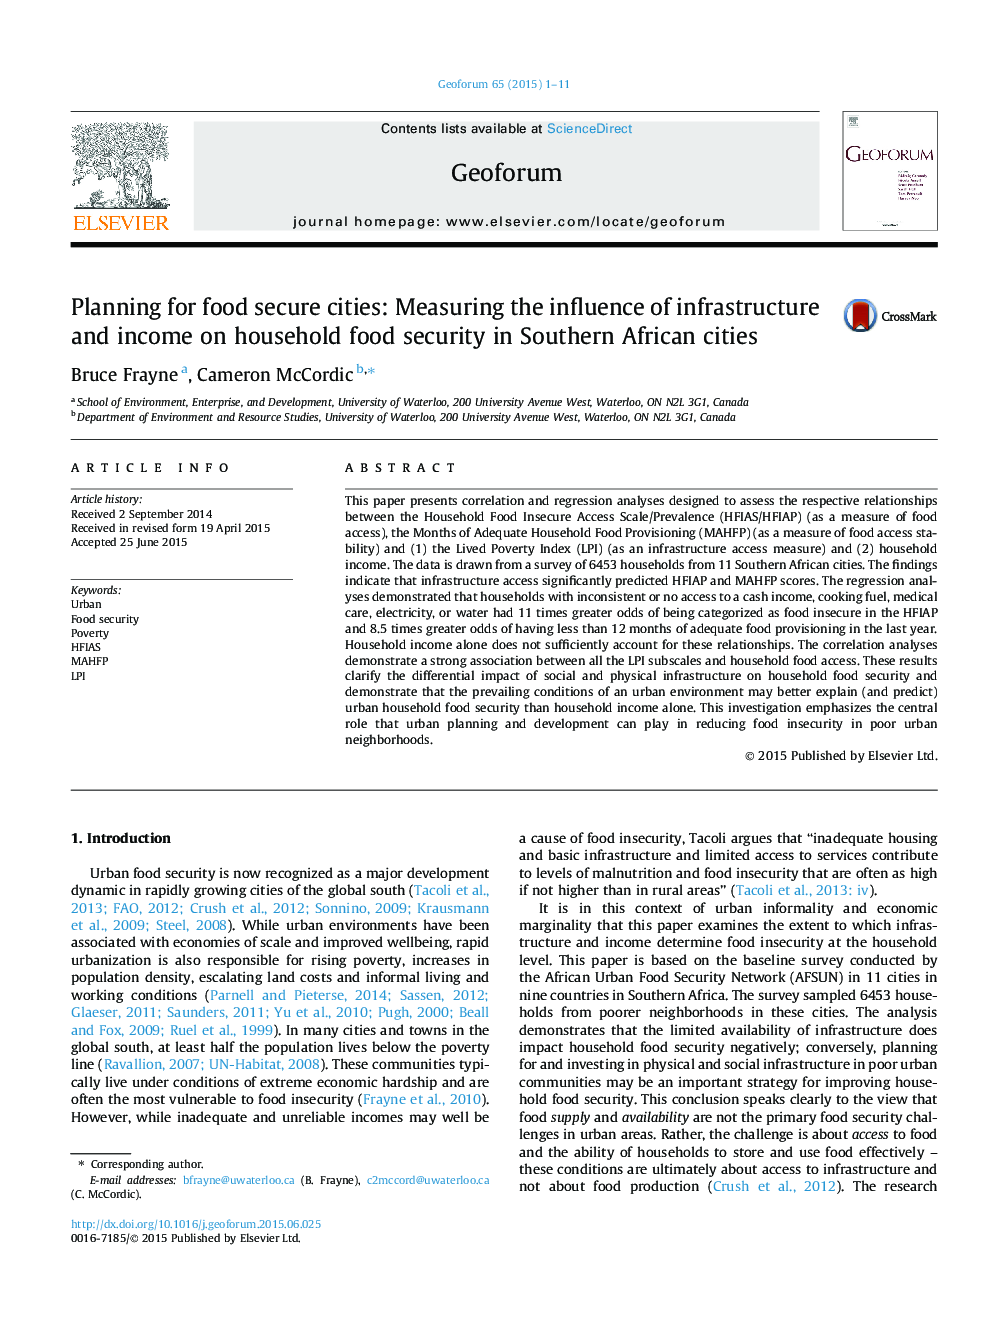 برنامه ریزی برای شهرهای امن غذا: سنجش تأثیر زیرساخت ها و درآمد بر امنیت غذایی خانوار در شهرهای جنوب آفریقا 